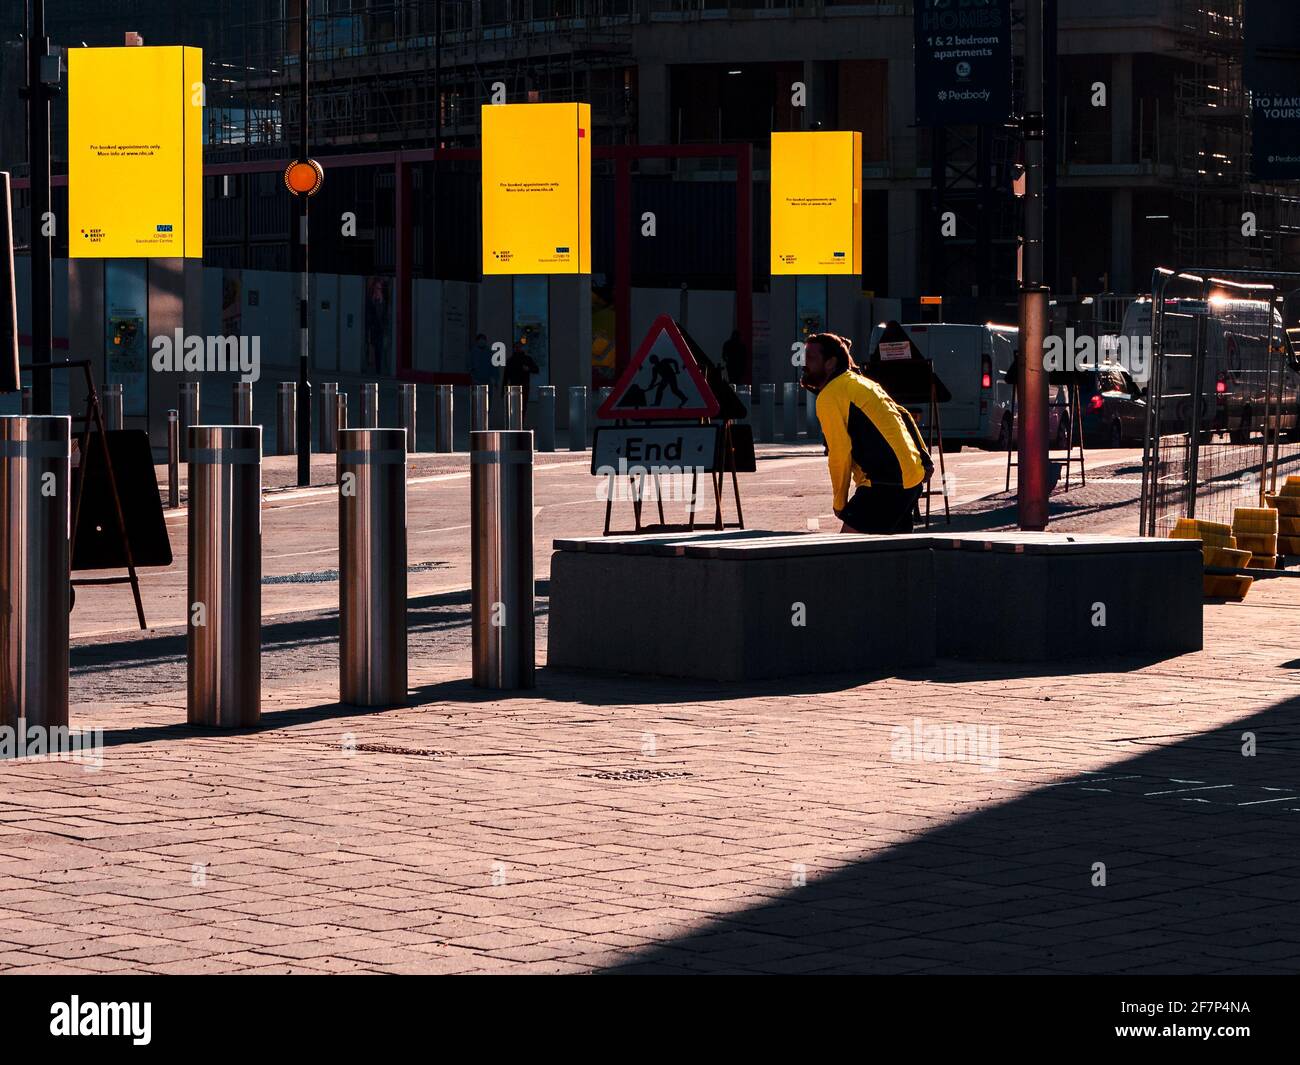 Road lavora in una strada londinese con pannelli pubblicitari gialli e un uomo con una giacca gialla. Foto Stock